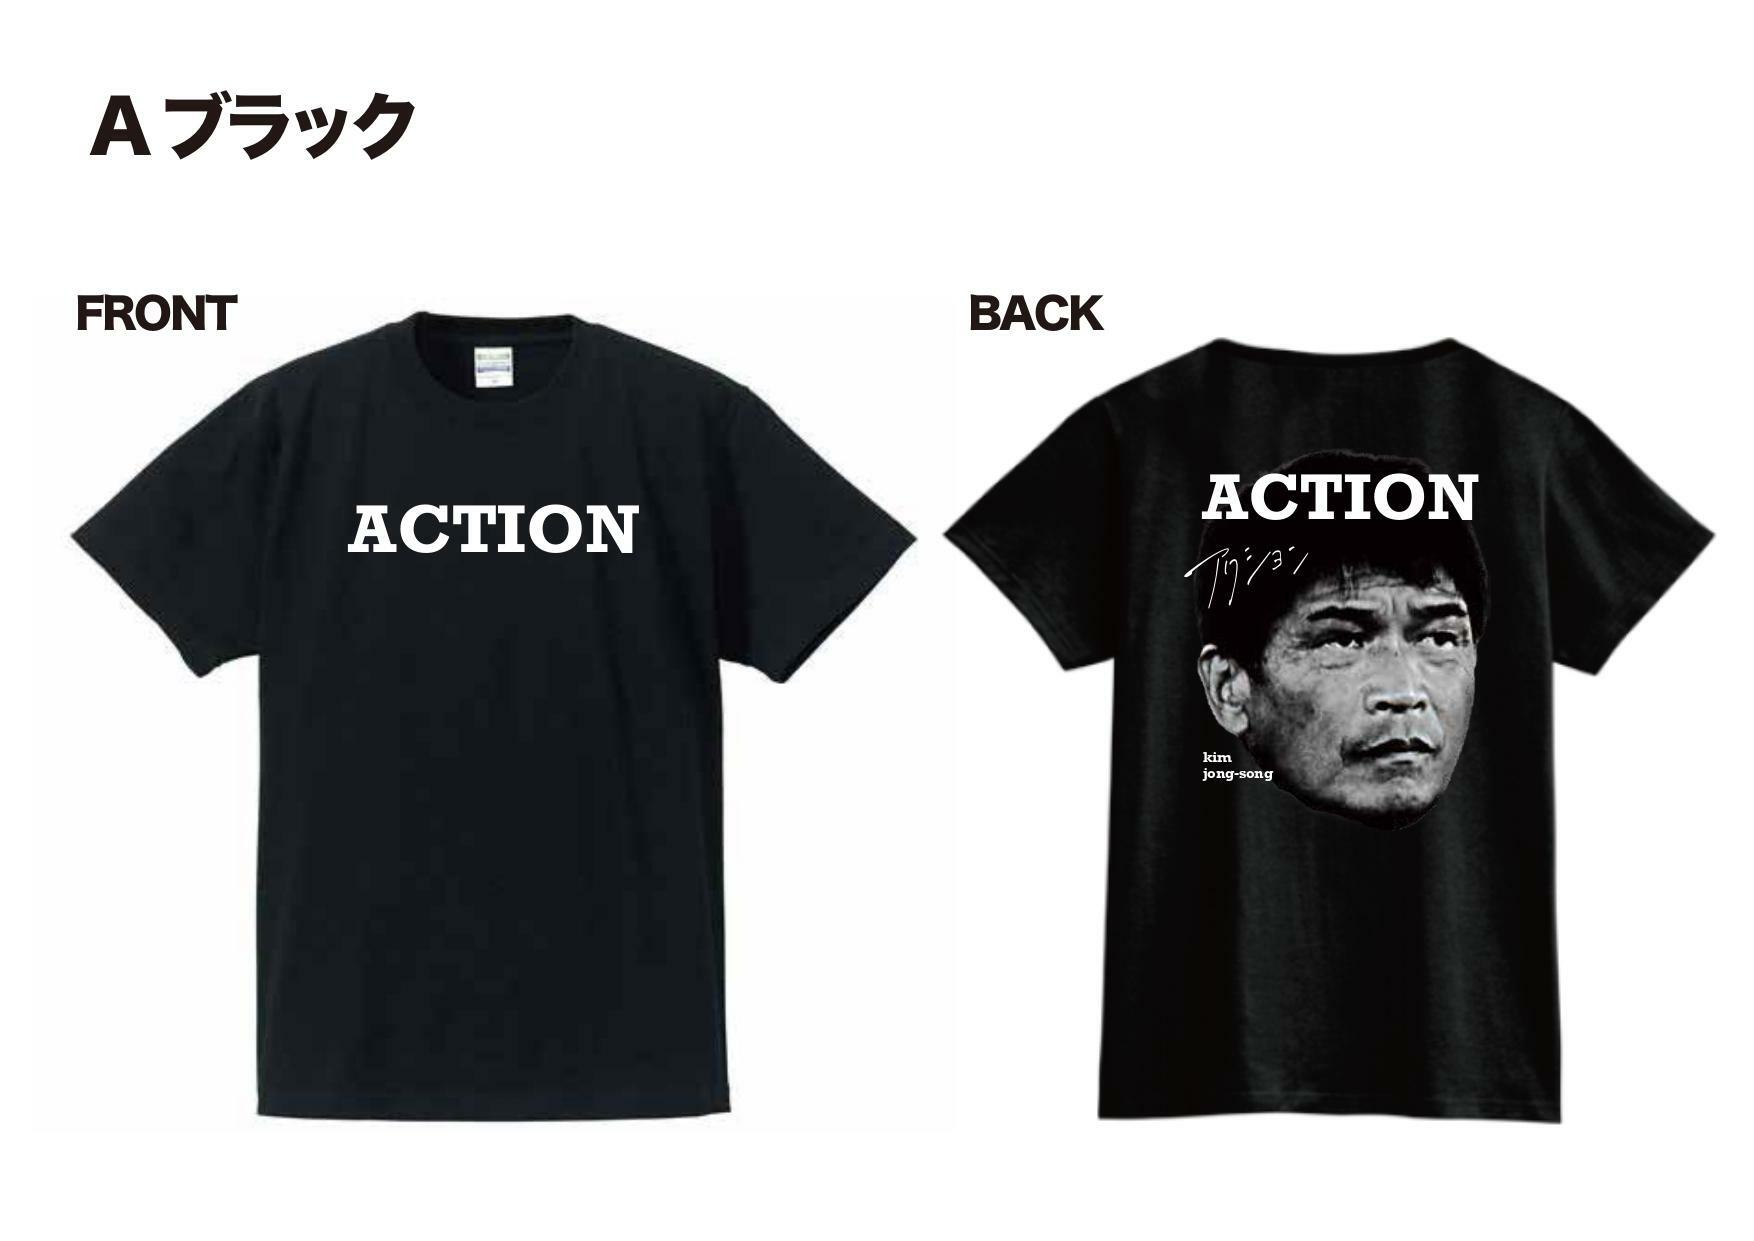 ジョンソン監督の「Action」Tシャツが完成。チーム全員のアイデアで創ったものだ。監督はこれを着て試合に臨むのだろうか？